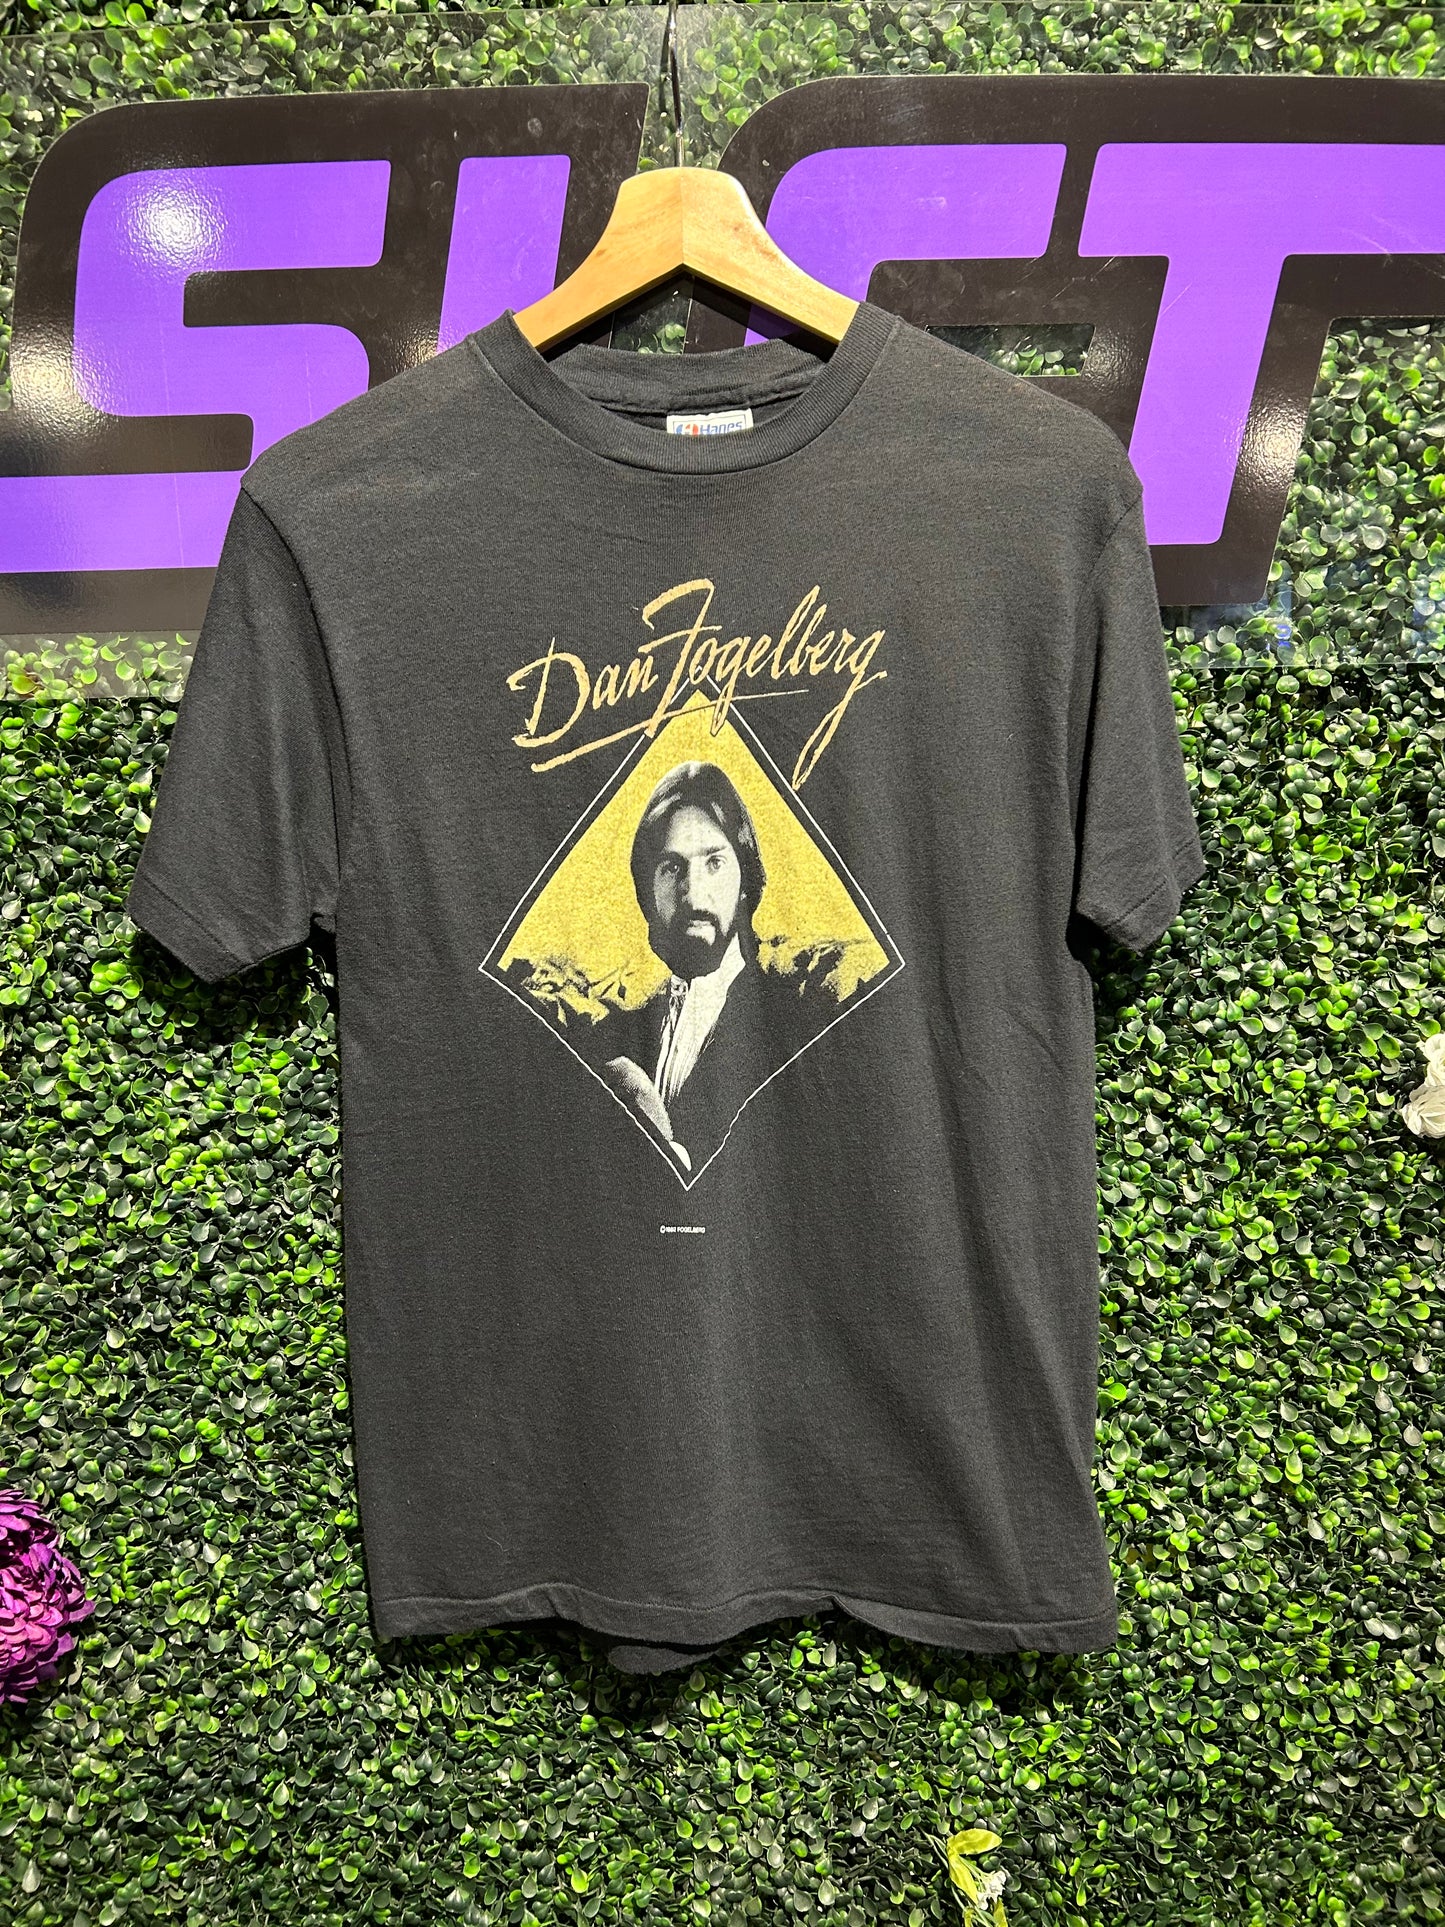 1984 Dan Fogelberg Tour of America T-Shirt. Size S/M